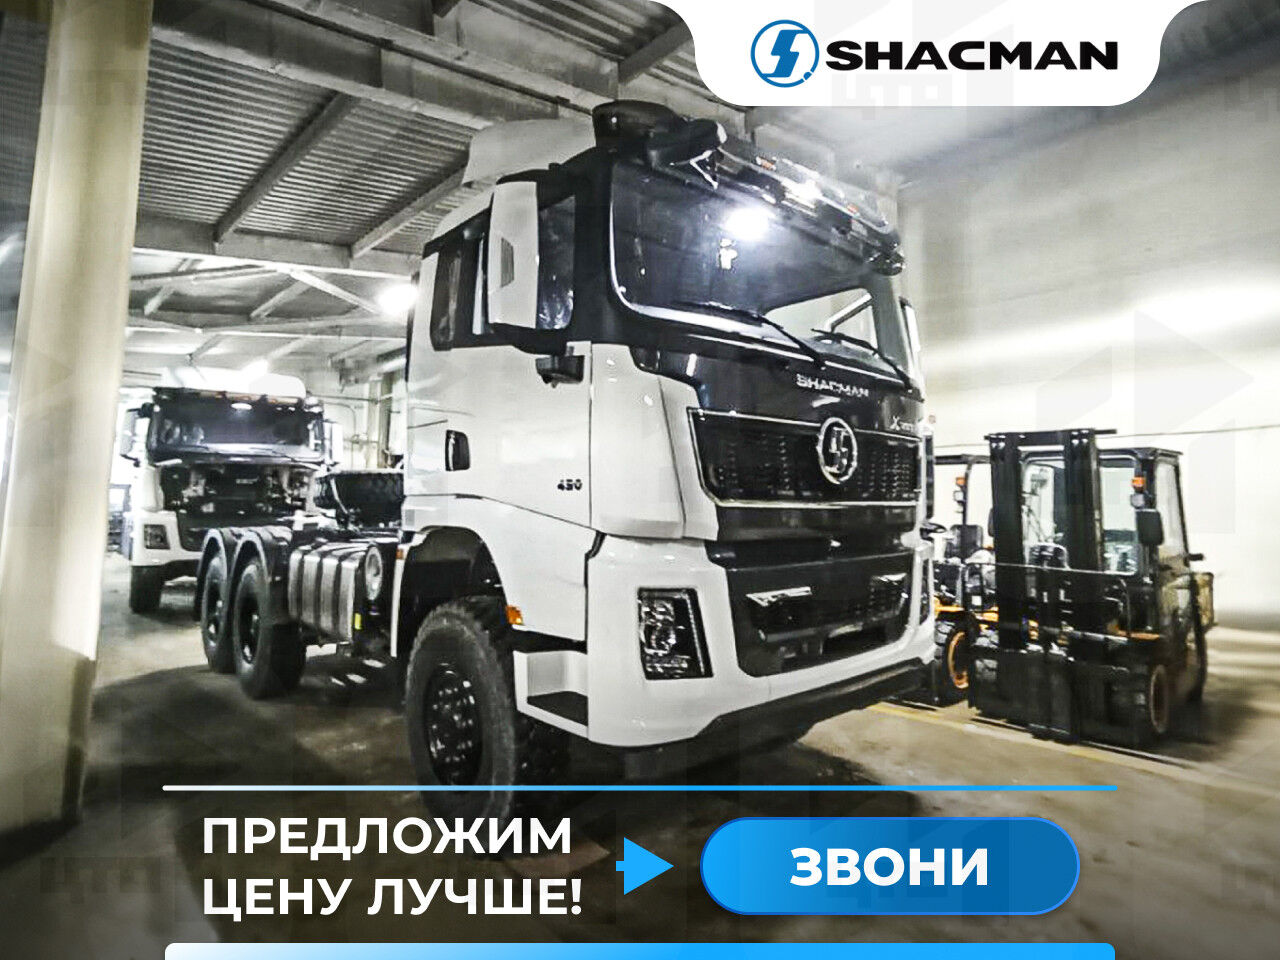 Тягач Shacman SX42586V385 6x6 430 л.с. X3000 (w) Shacman (Shaanxi)